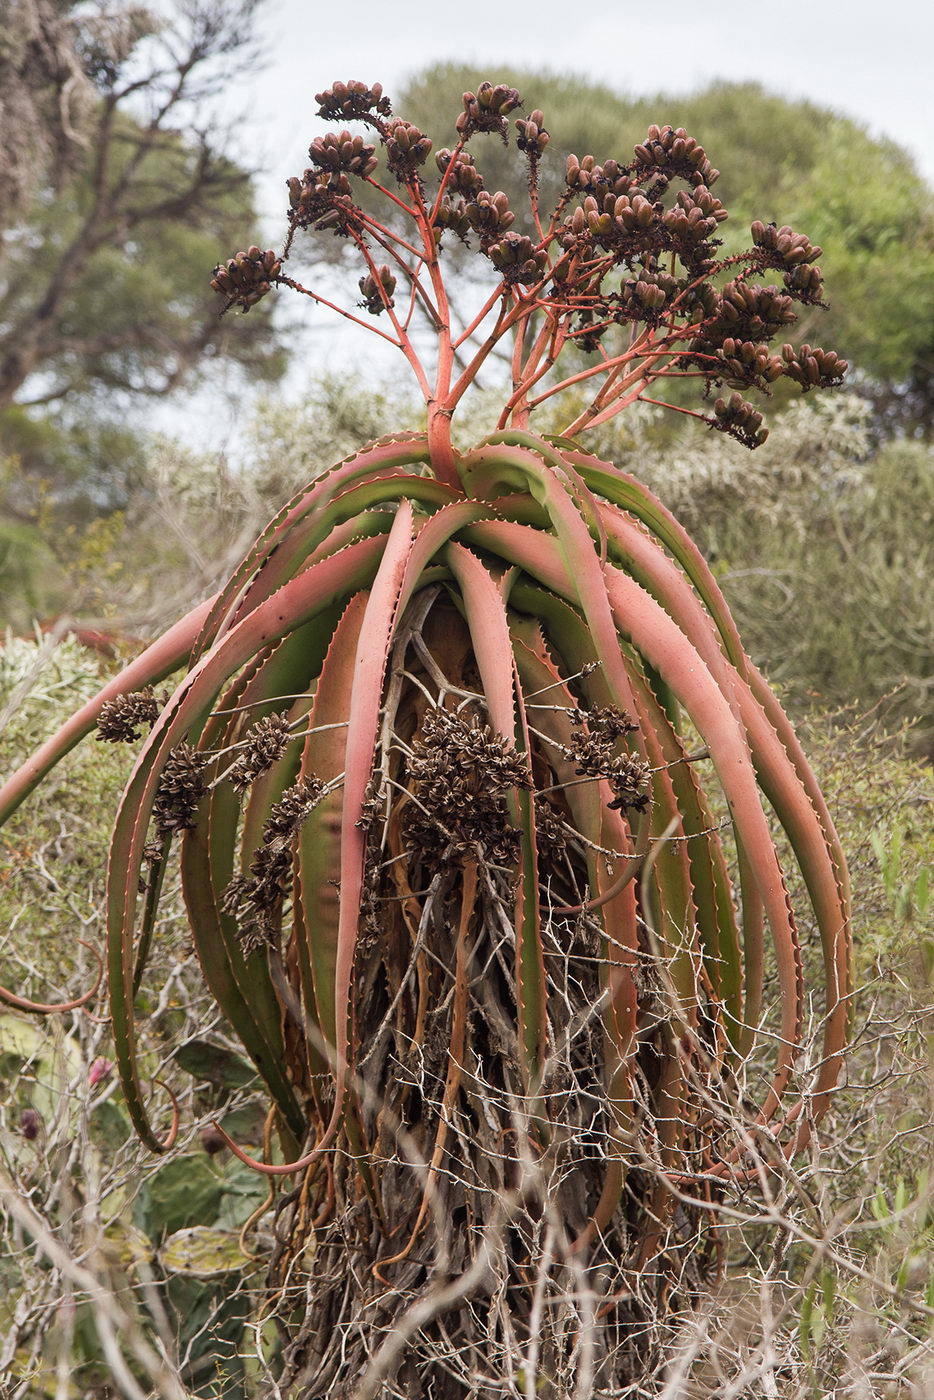 Image of genus Aloe specimen.